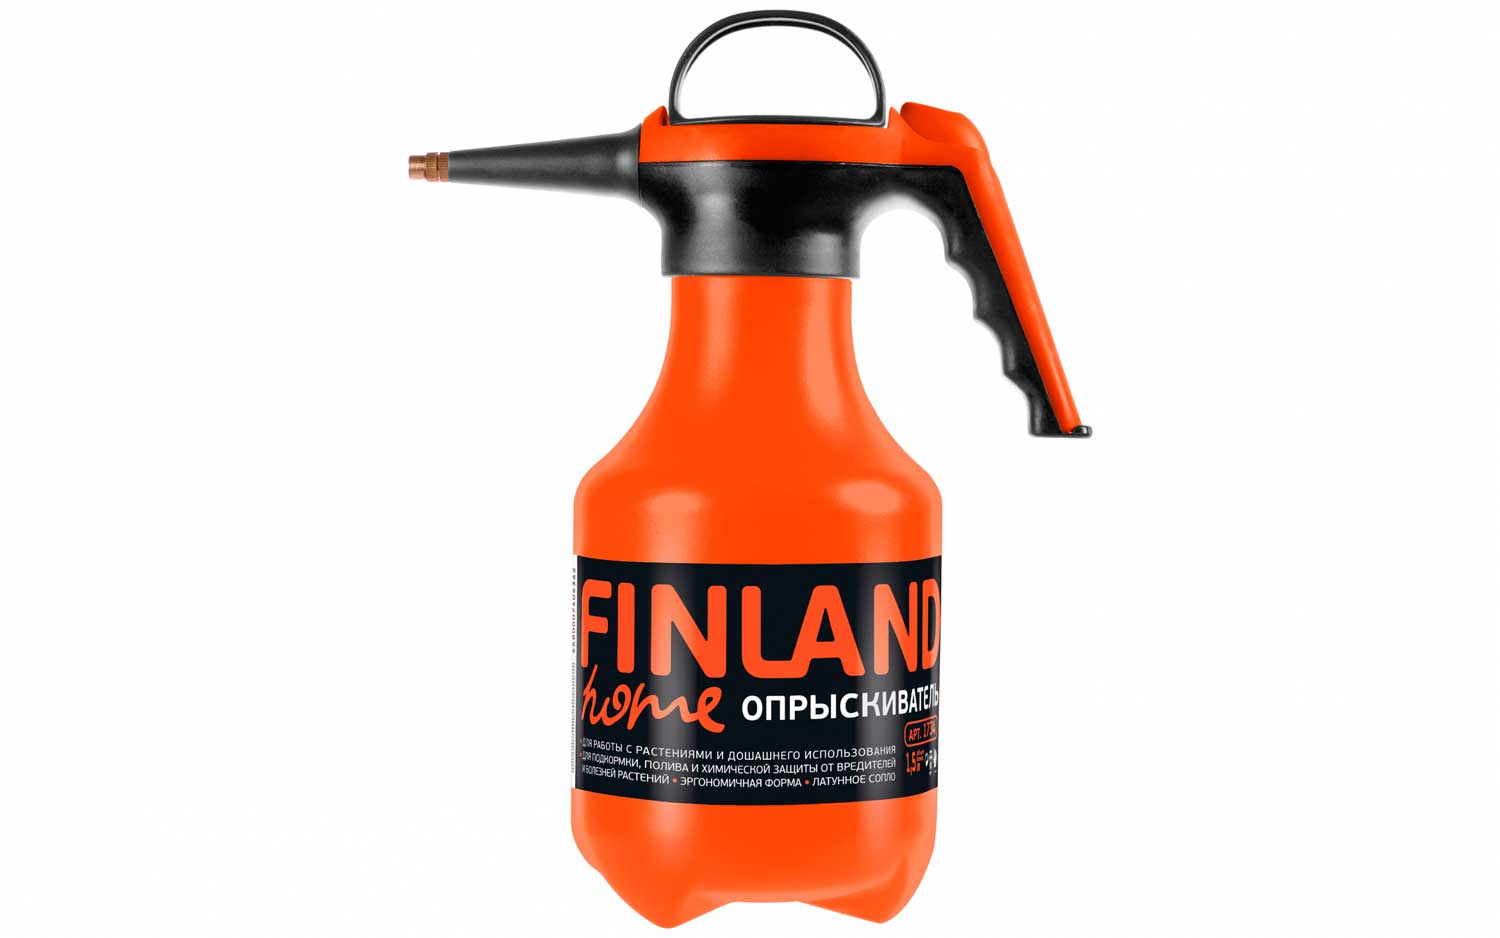 Опрыскиватель 1,5л Finland (оранж)